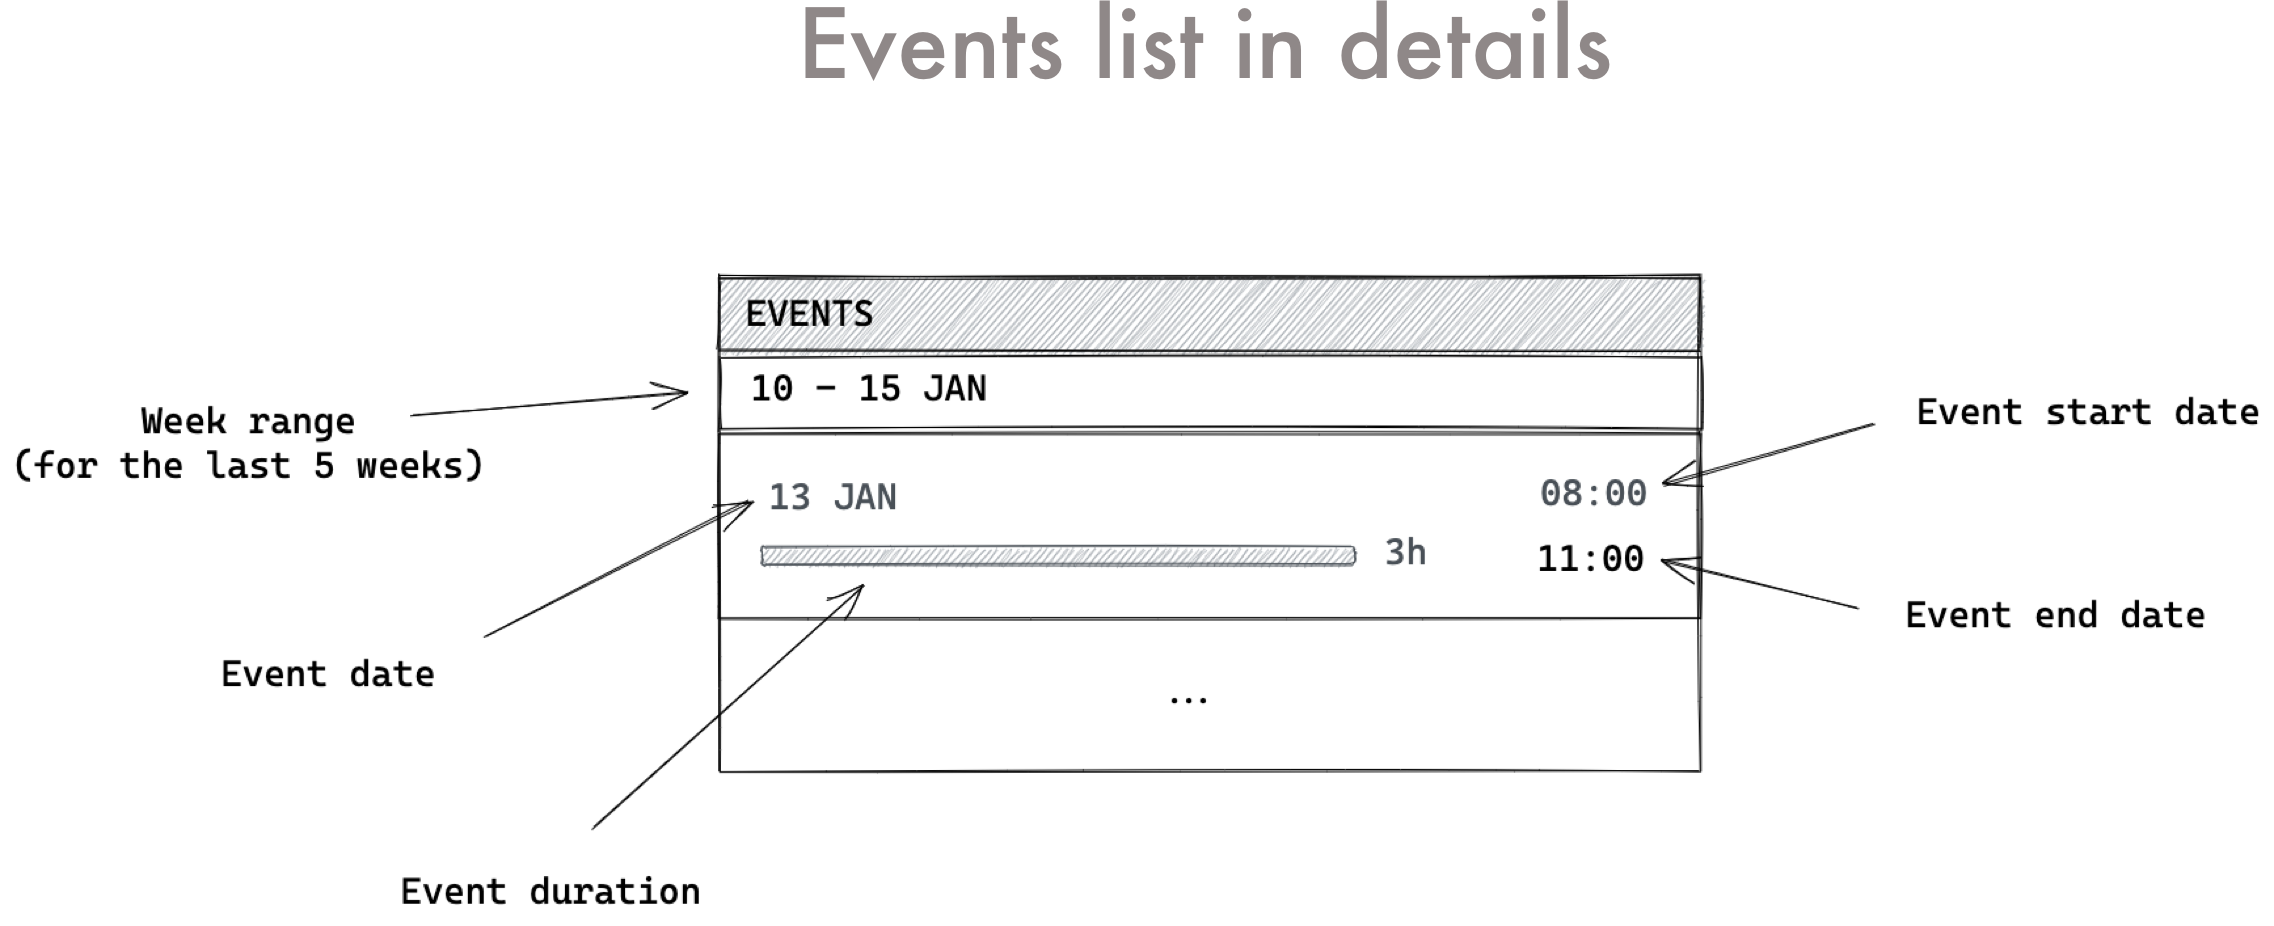 Events list details